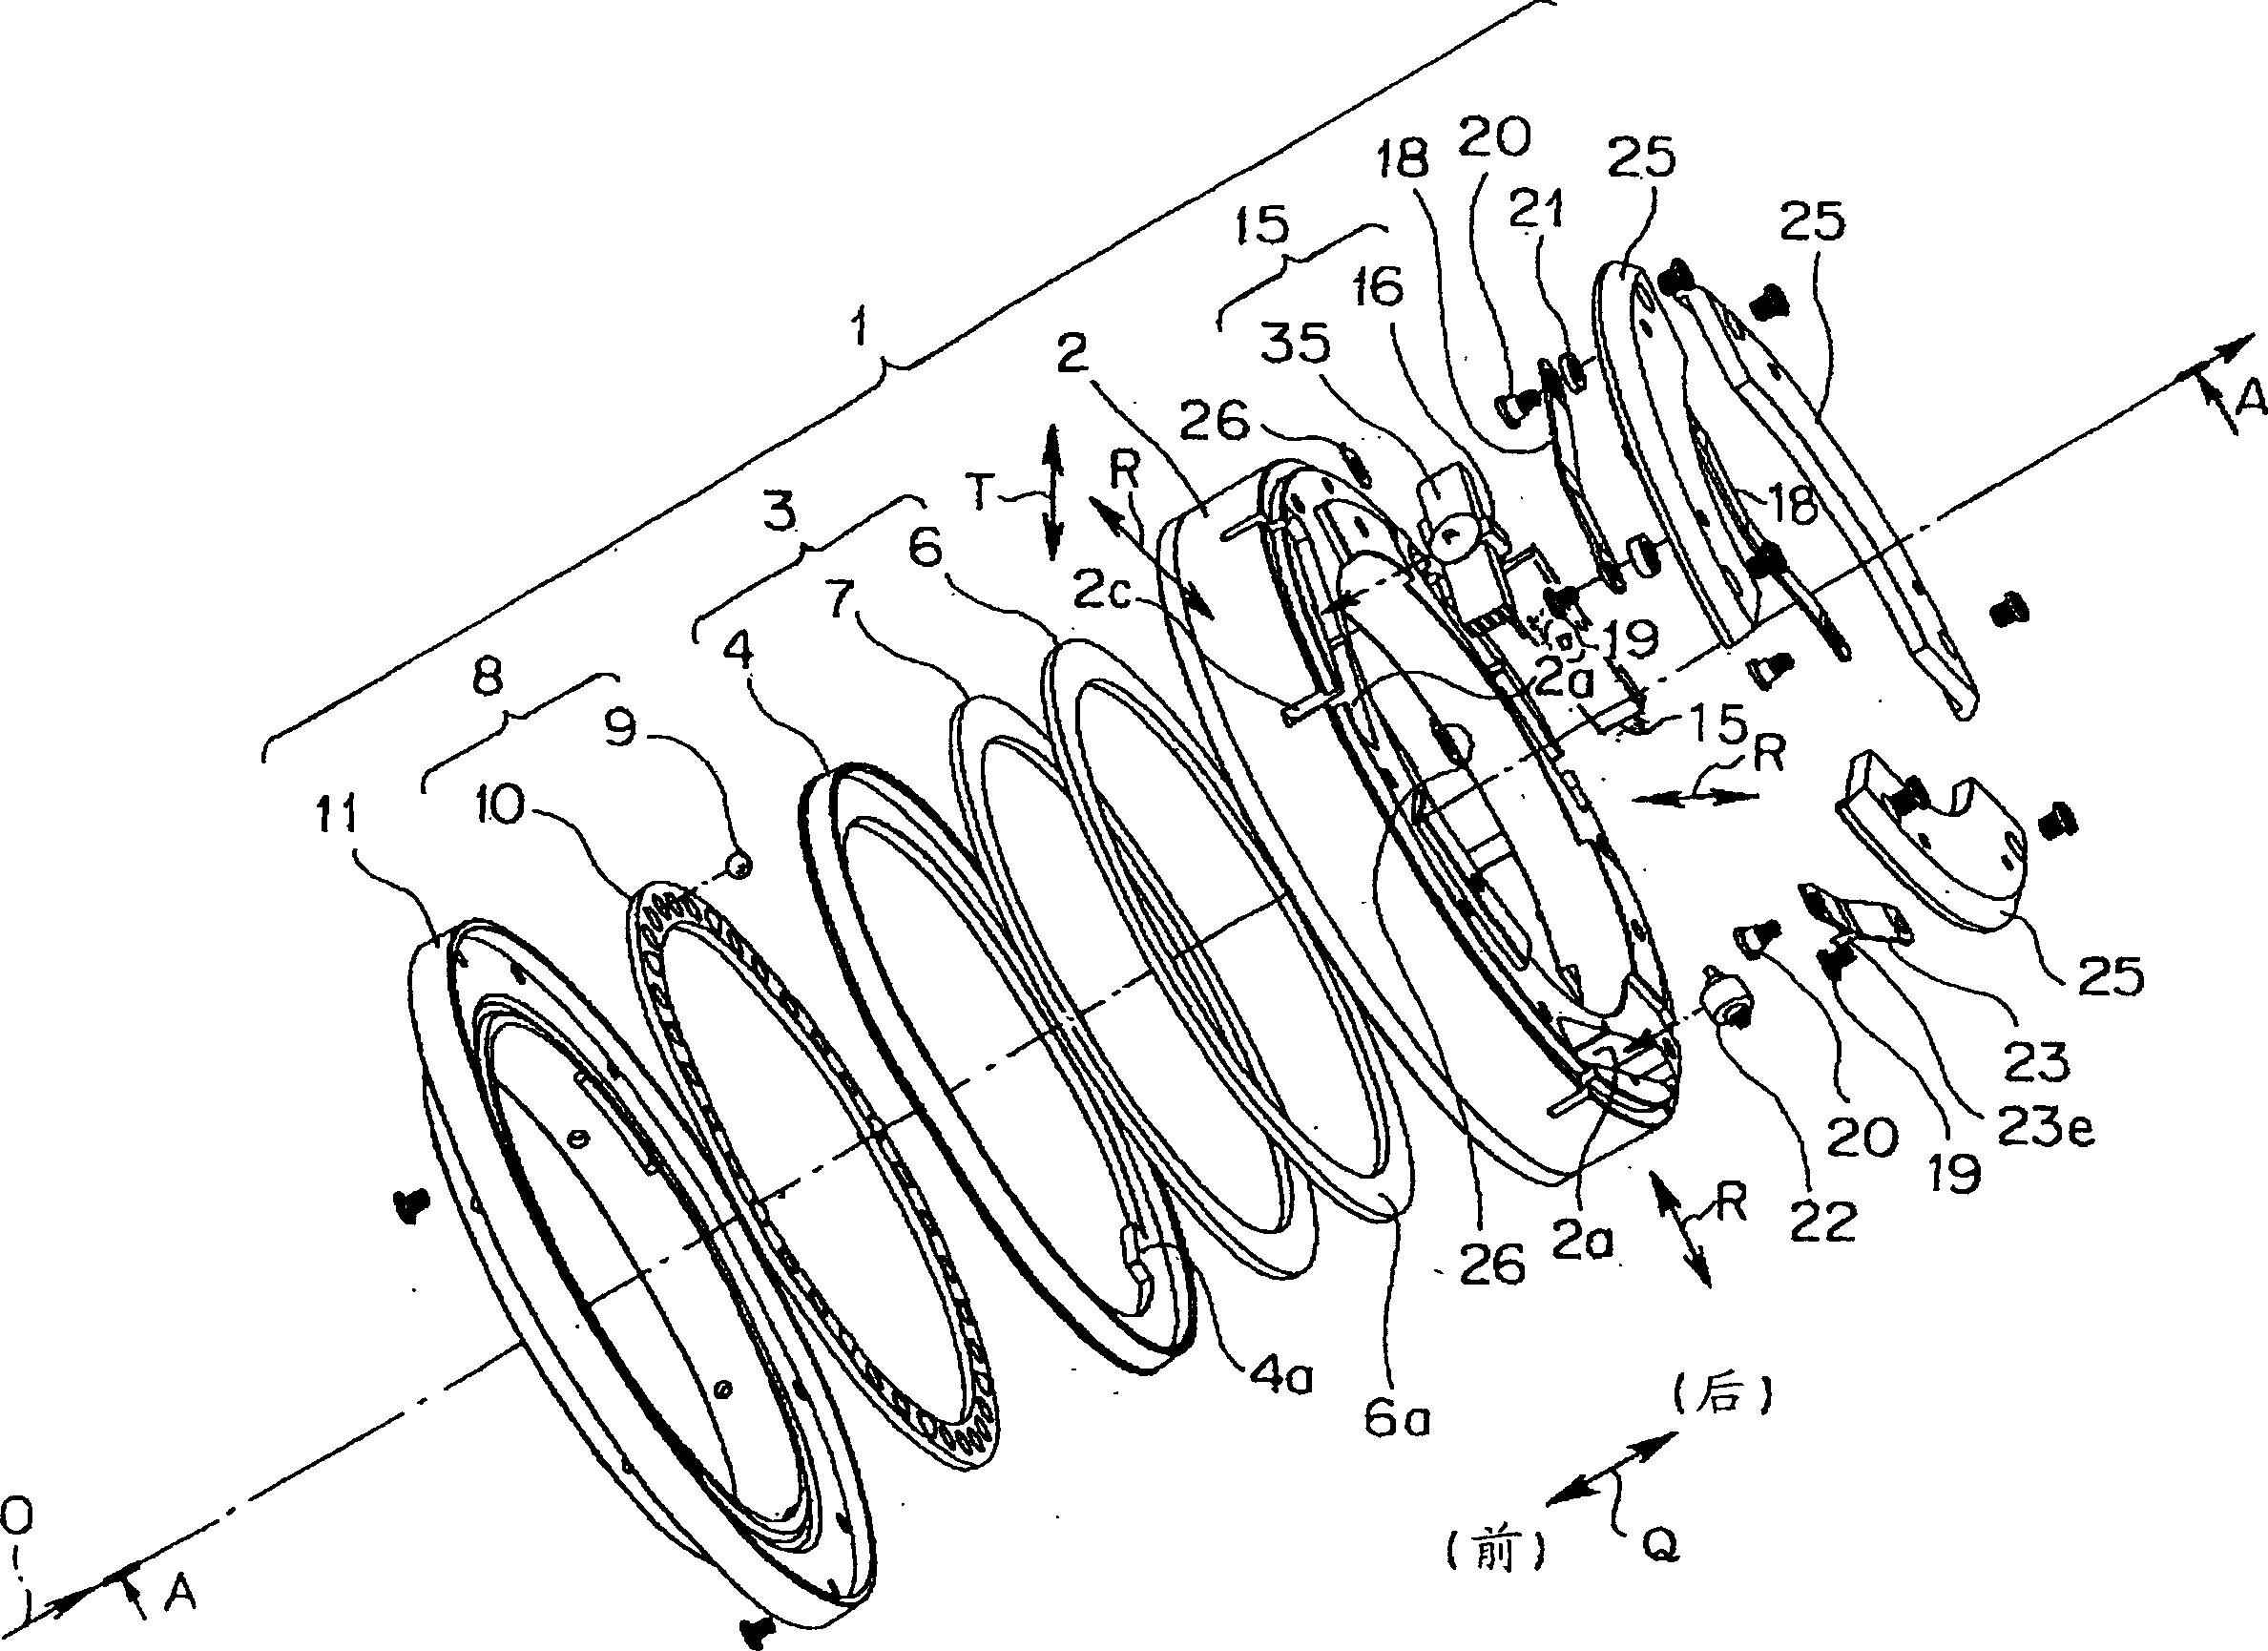 Vibration wave motor and lens barrel